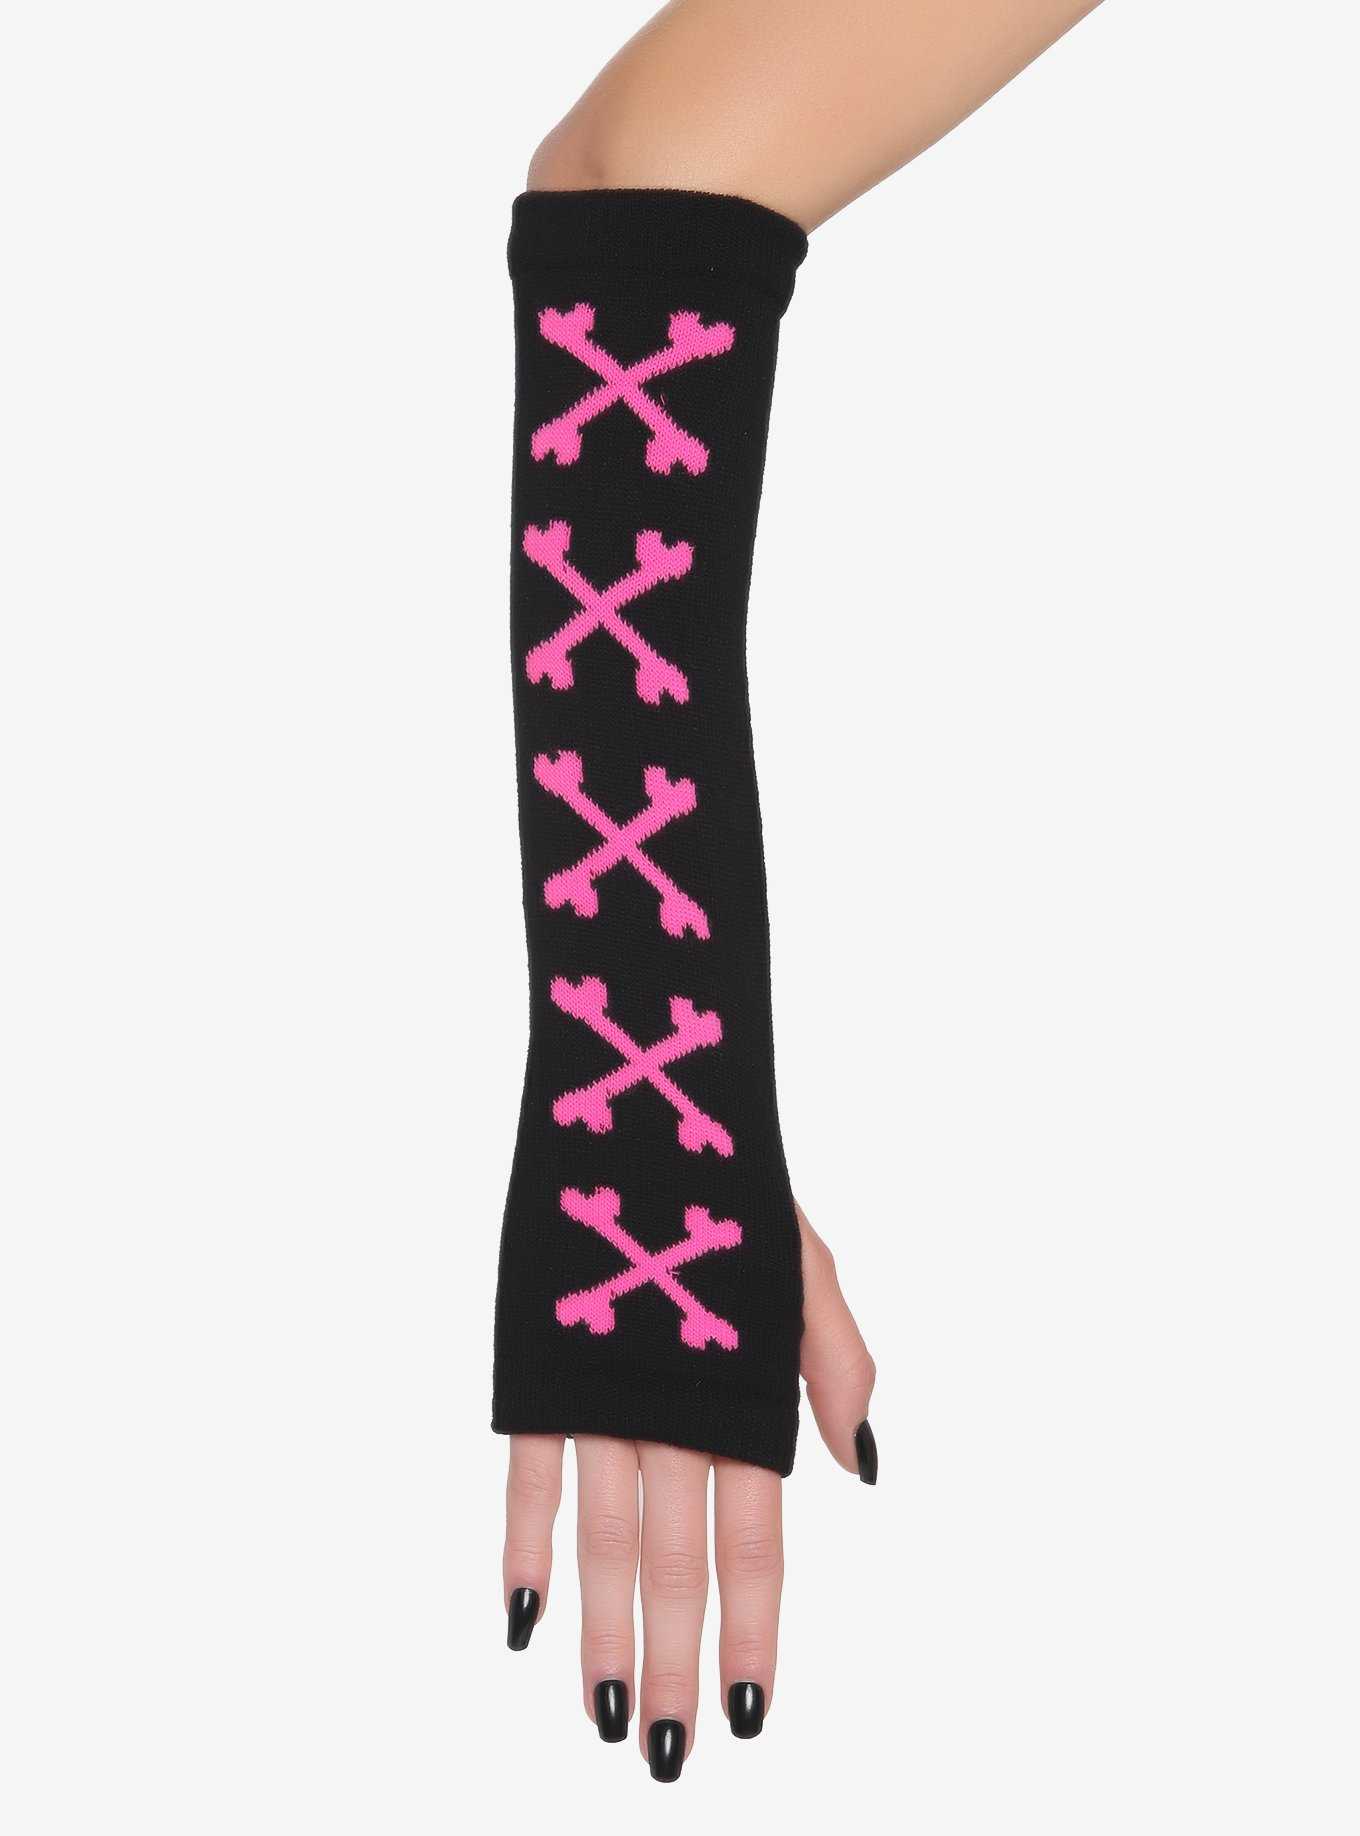 Black & Pink Crossbones Arm Warmers, , hi-res